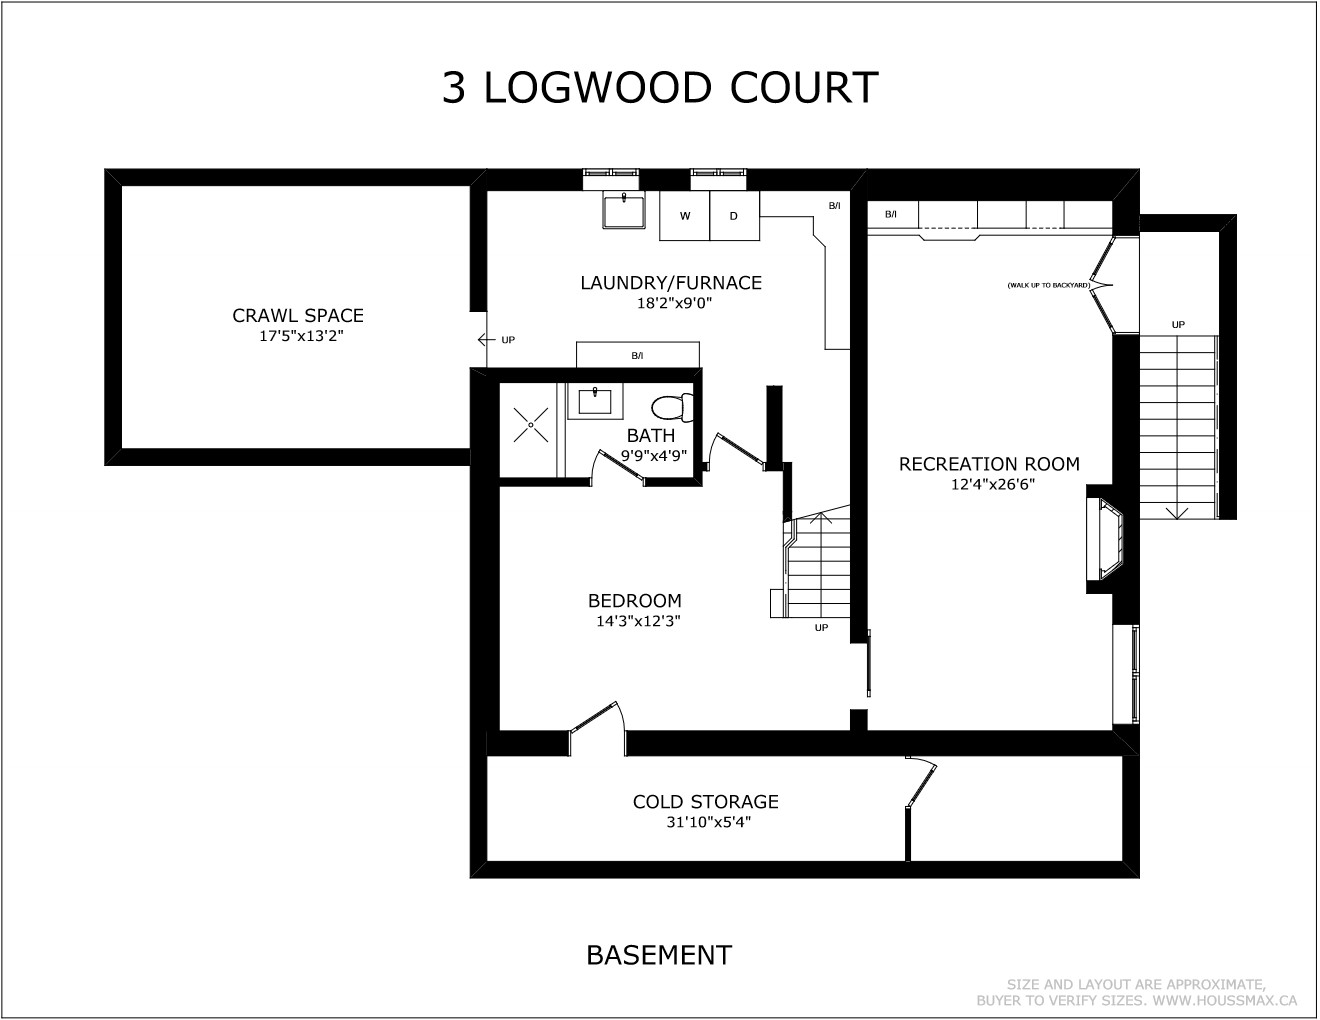 Basement level floor plans for 3 Logwood Court.